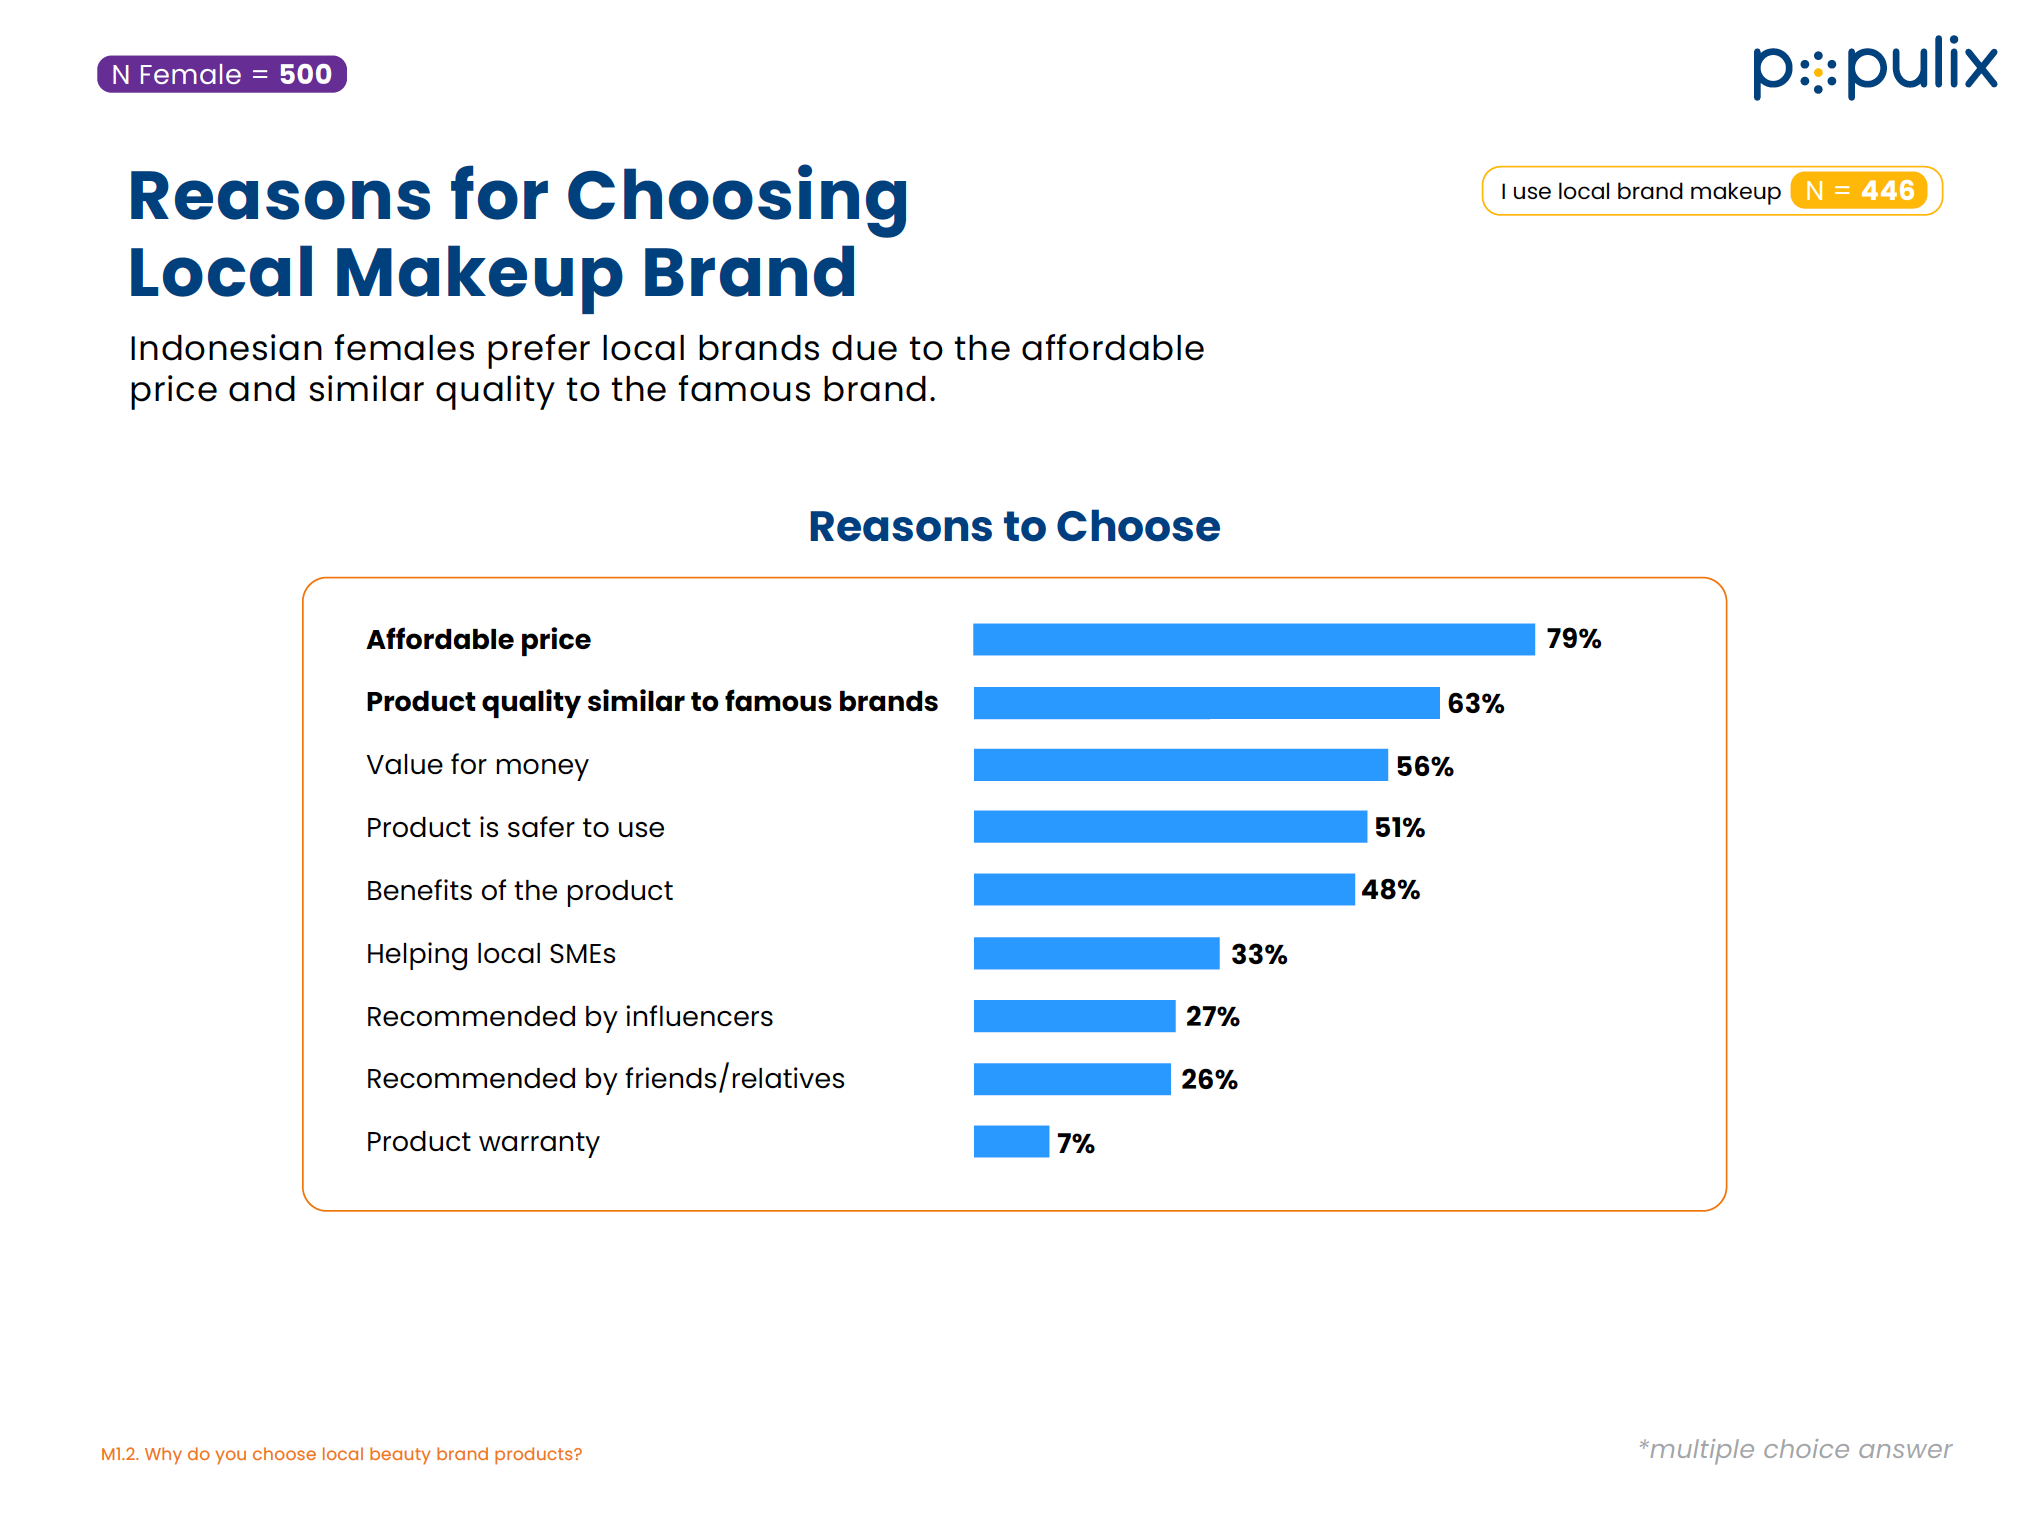 Alasan konsumen Indonesia memilih produk makeup dan perawatan wajah lokal. (Sumber gambar: Populix)